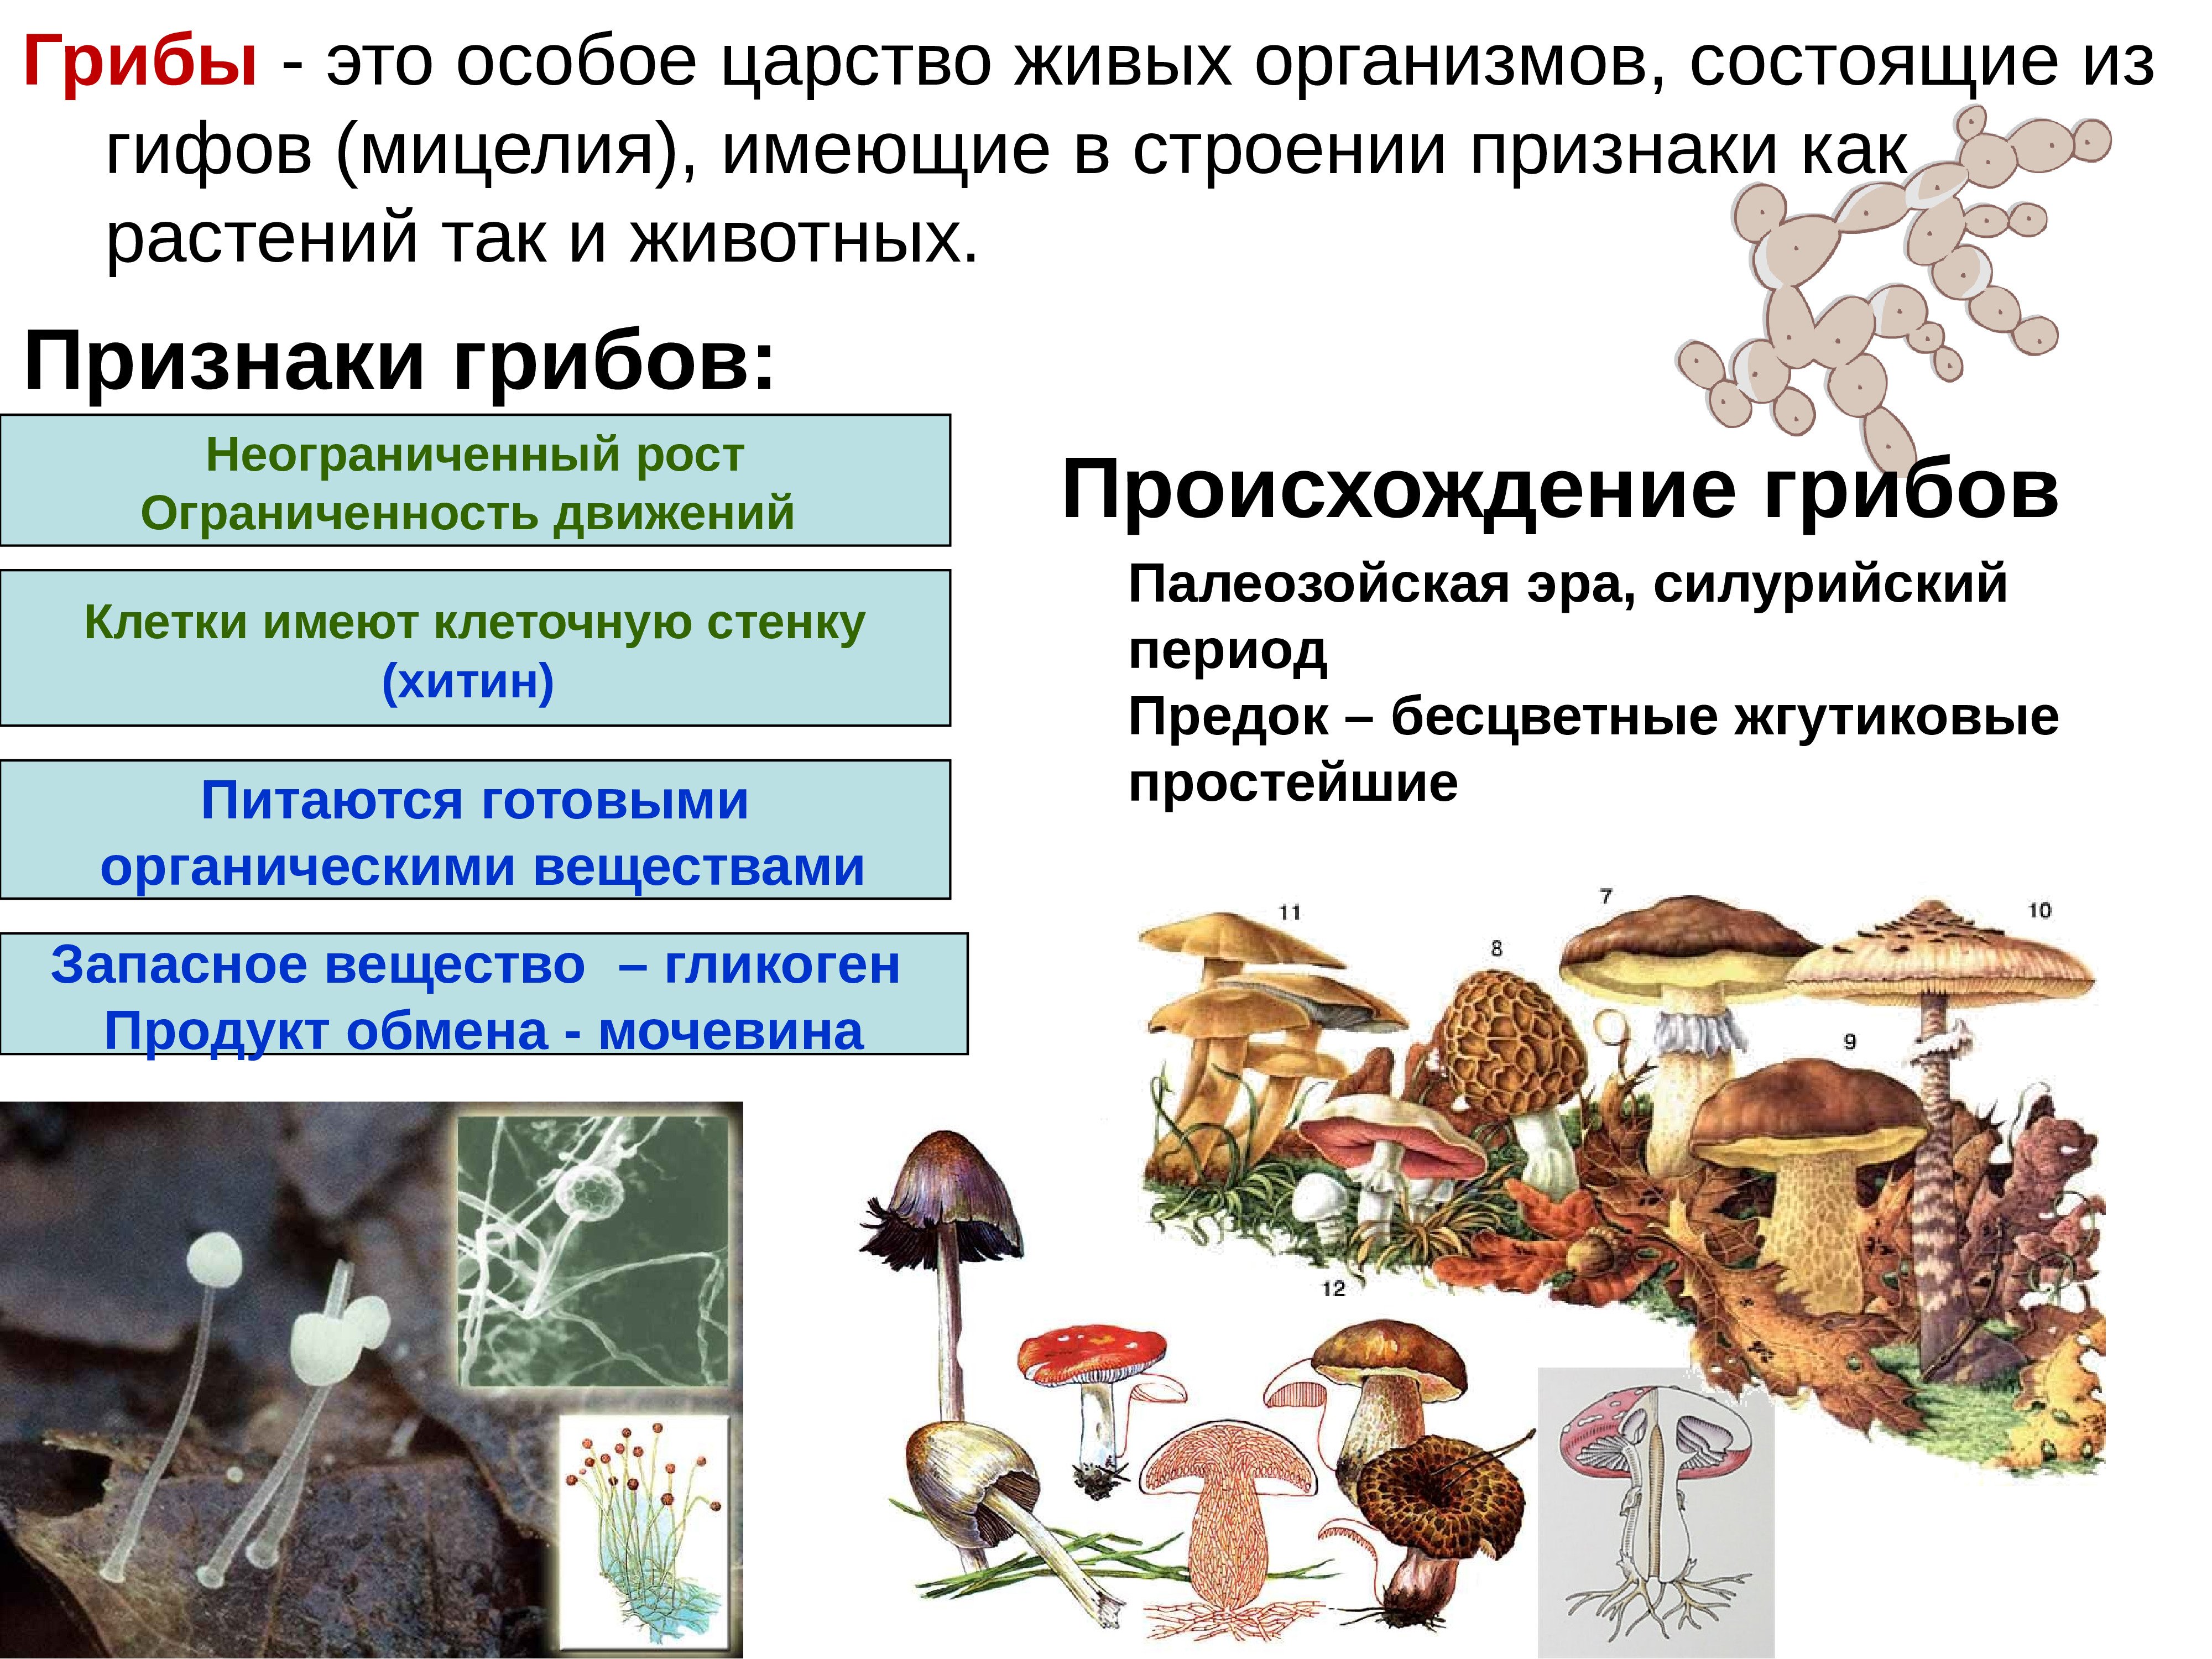 Грибы живут в организме. Признаки характерные для царства грибы. Царства живых организмов грибы. Грибы царство грибов. Грибы особое царство живых организмов.